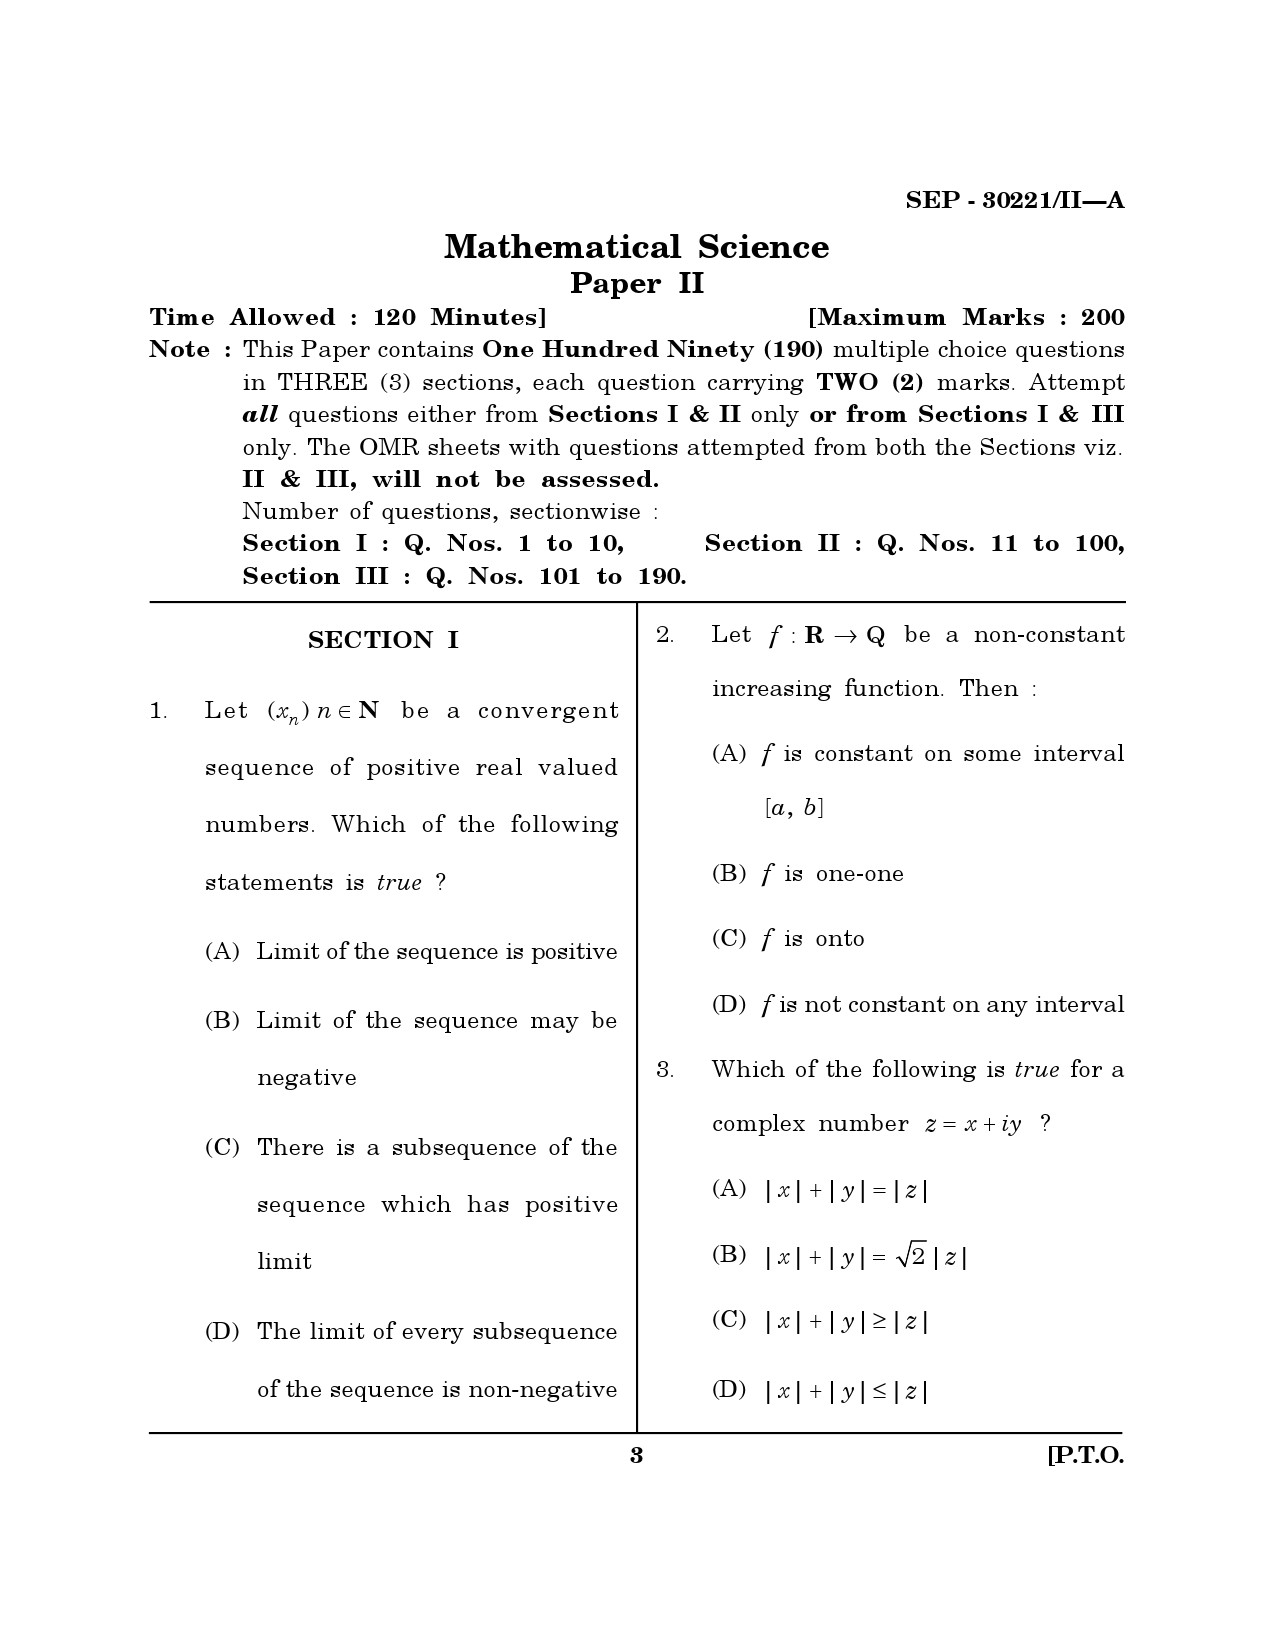 Maharashtra SET Mathematical Sciences Exam Question Paper September 2021 2